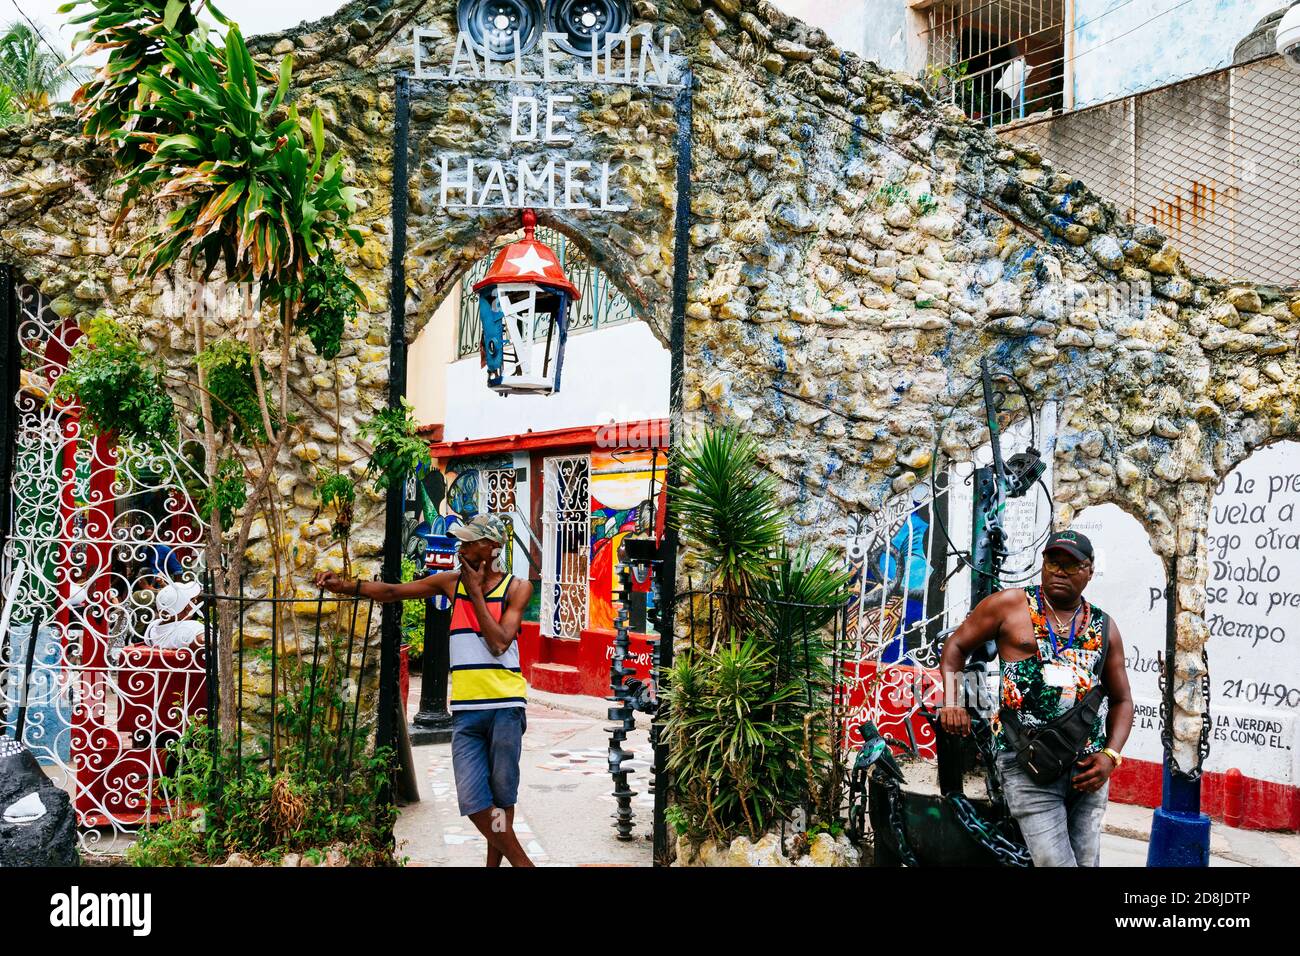 Callejón de Hamel. L'allée étroite est devenue un sanctuaire pour les religions afro-cubaines grâce à l'art créé par Salvador González. Les bâtiments sont bordés Banque D'Images